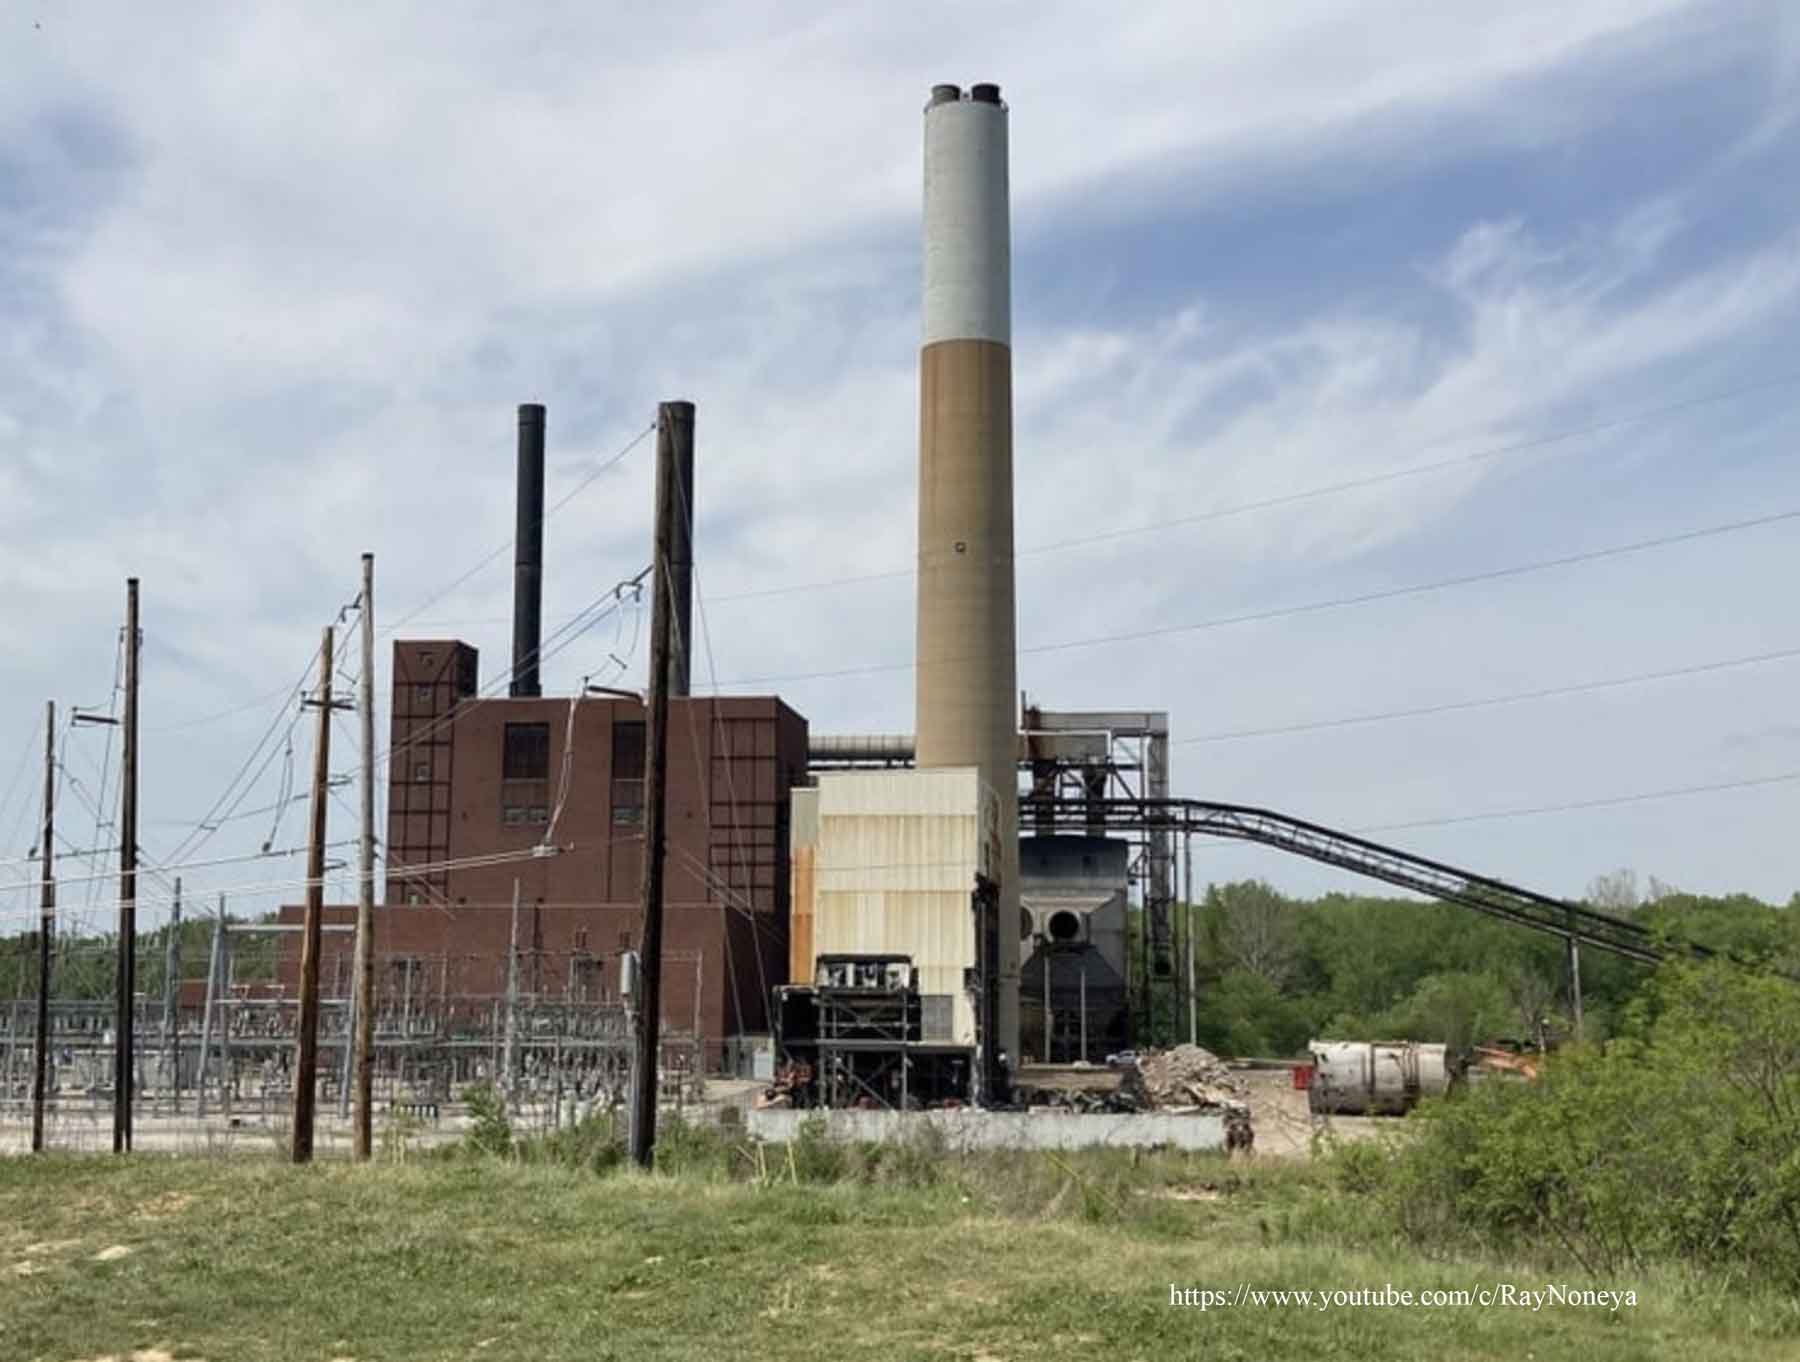 Ohio Edison Power Plant